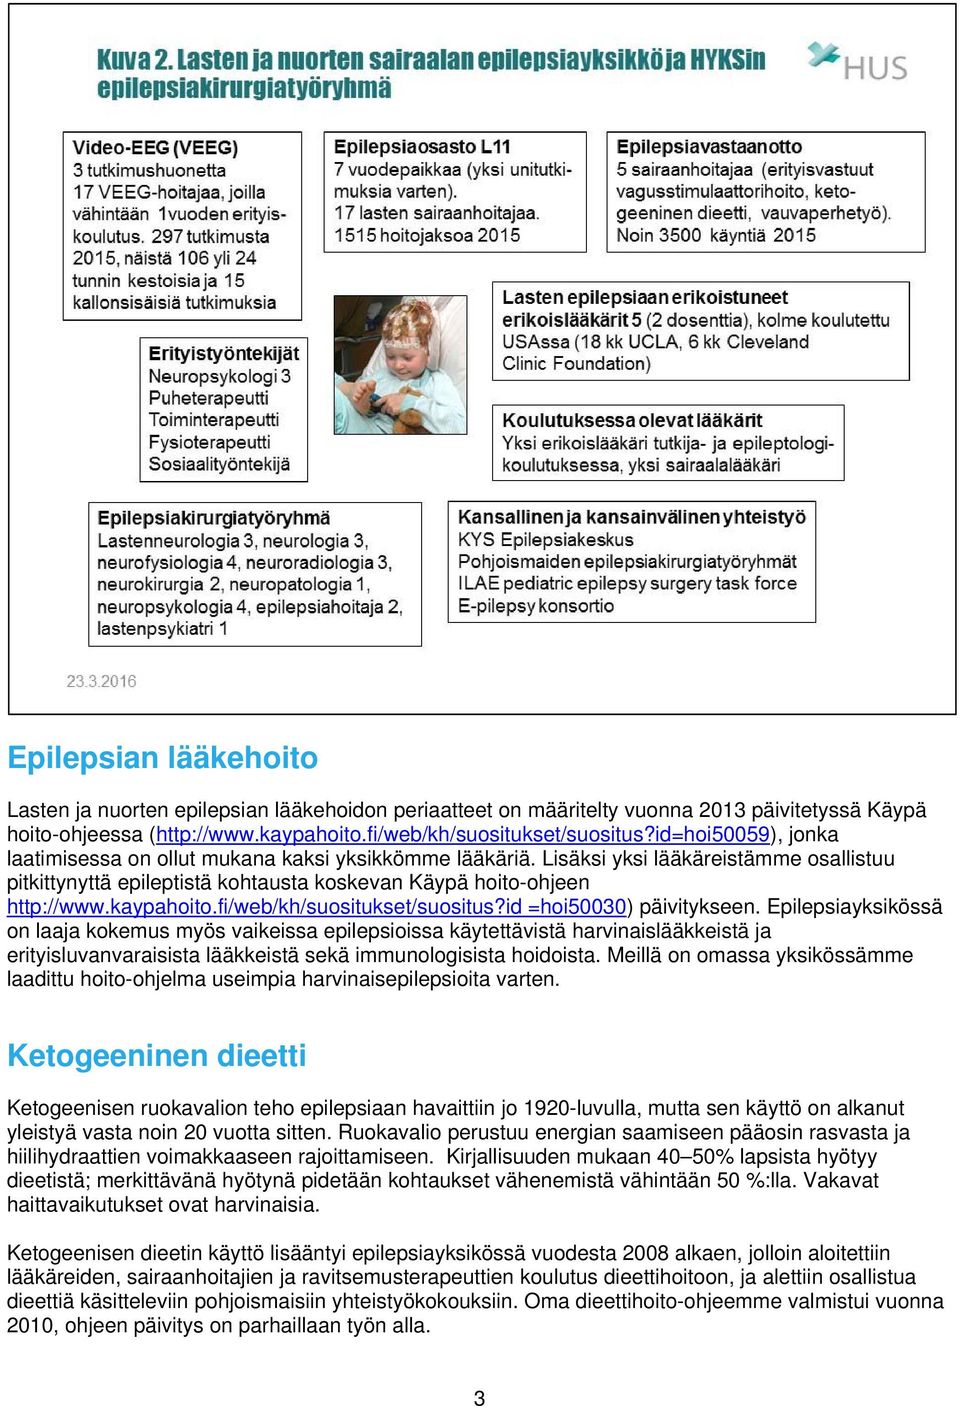 kaypahoito.fi/web/kh/suositukset/suositus?id =hoi50030) päivitykseen.